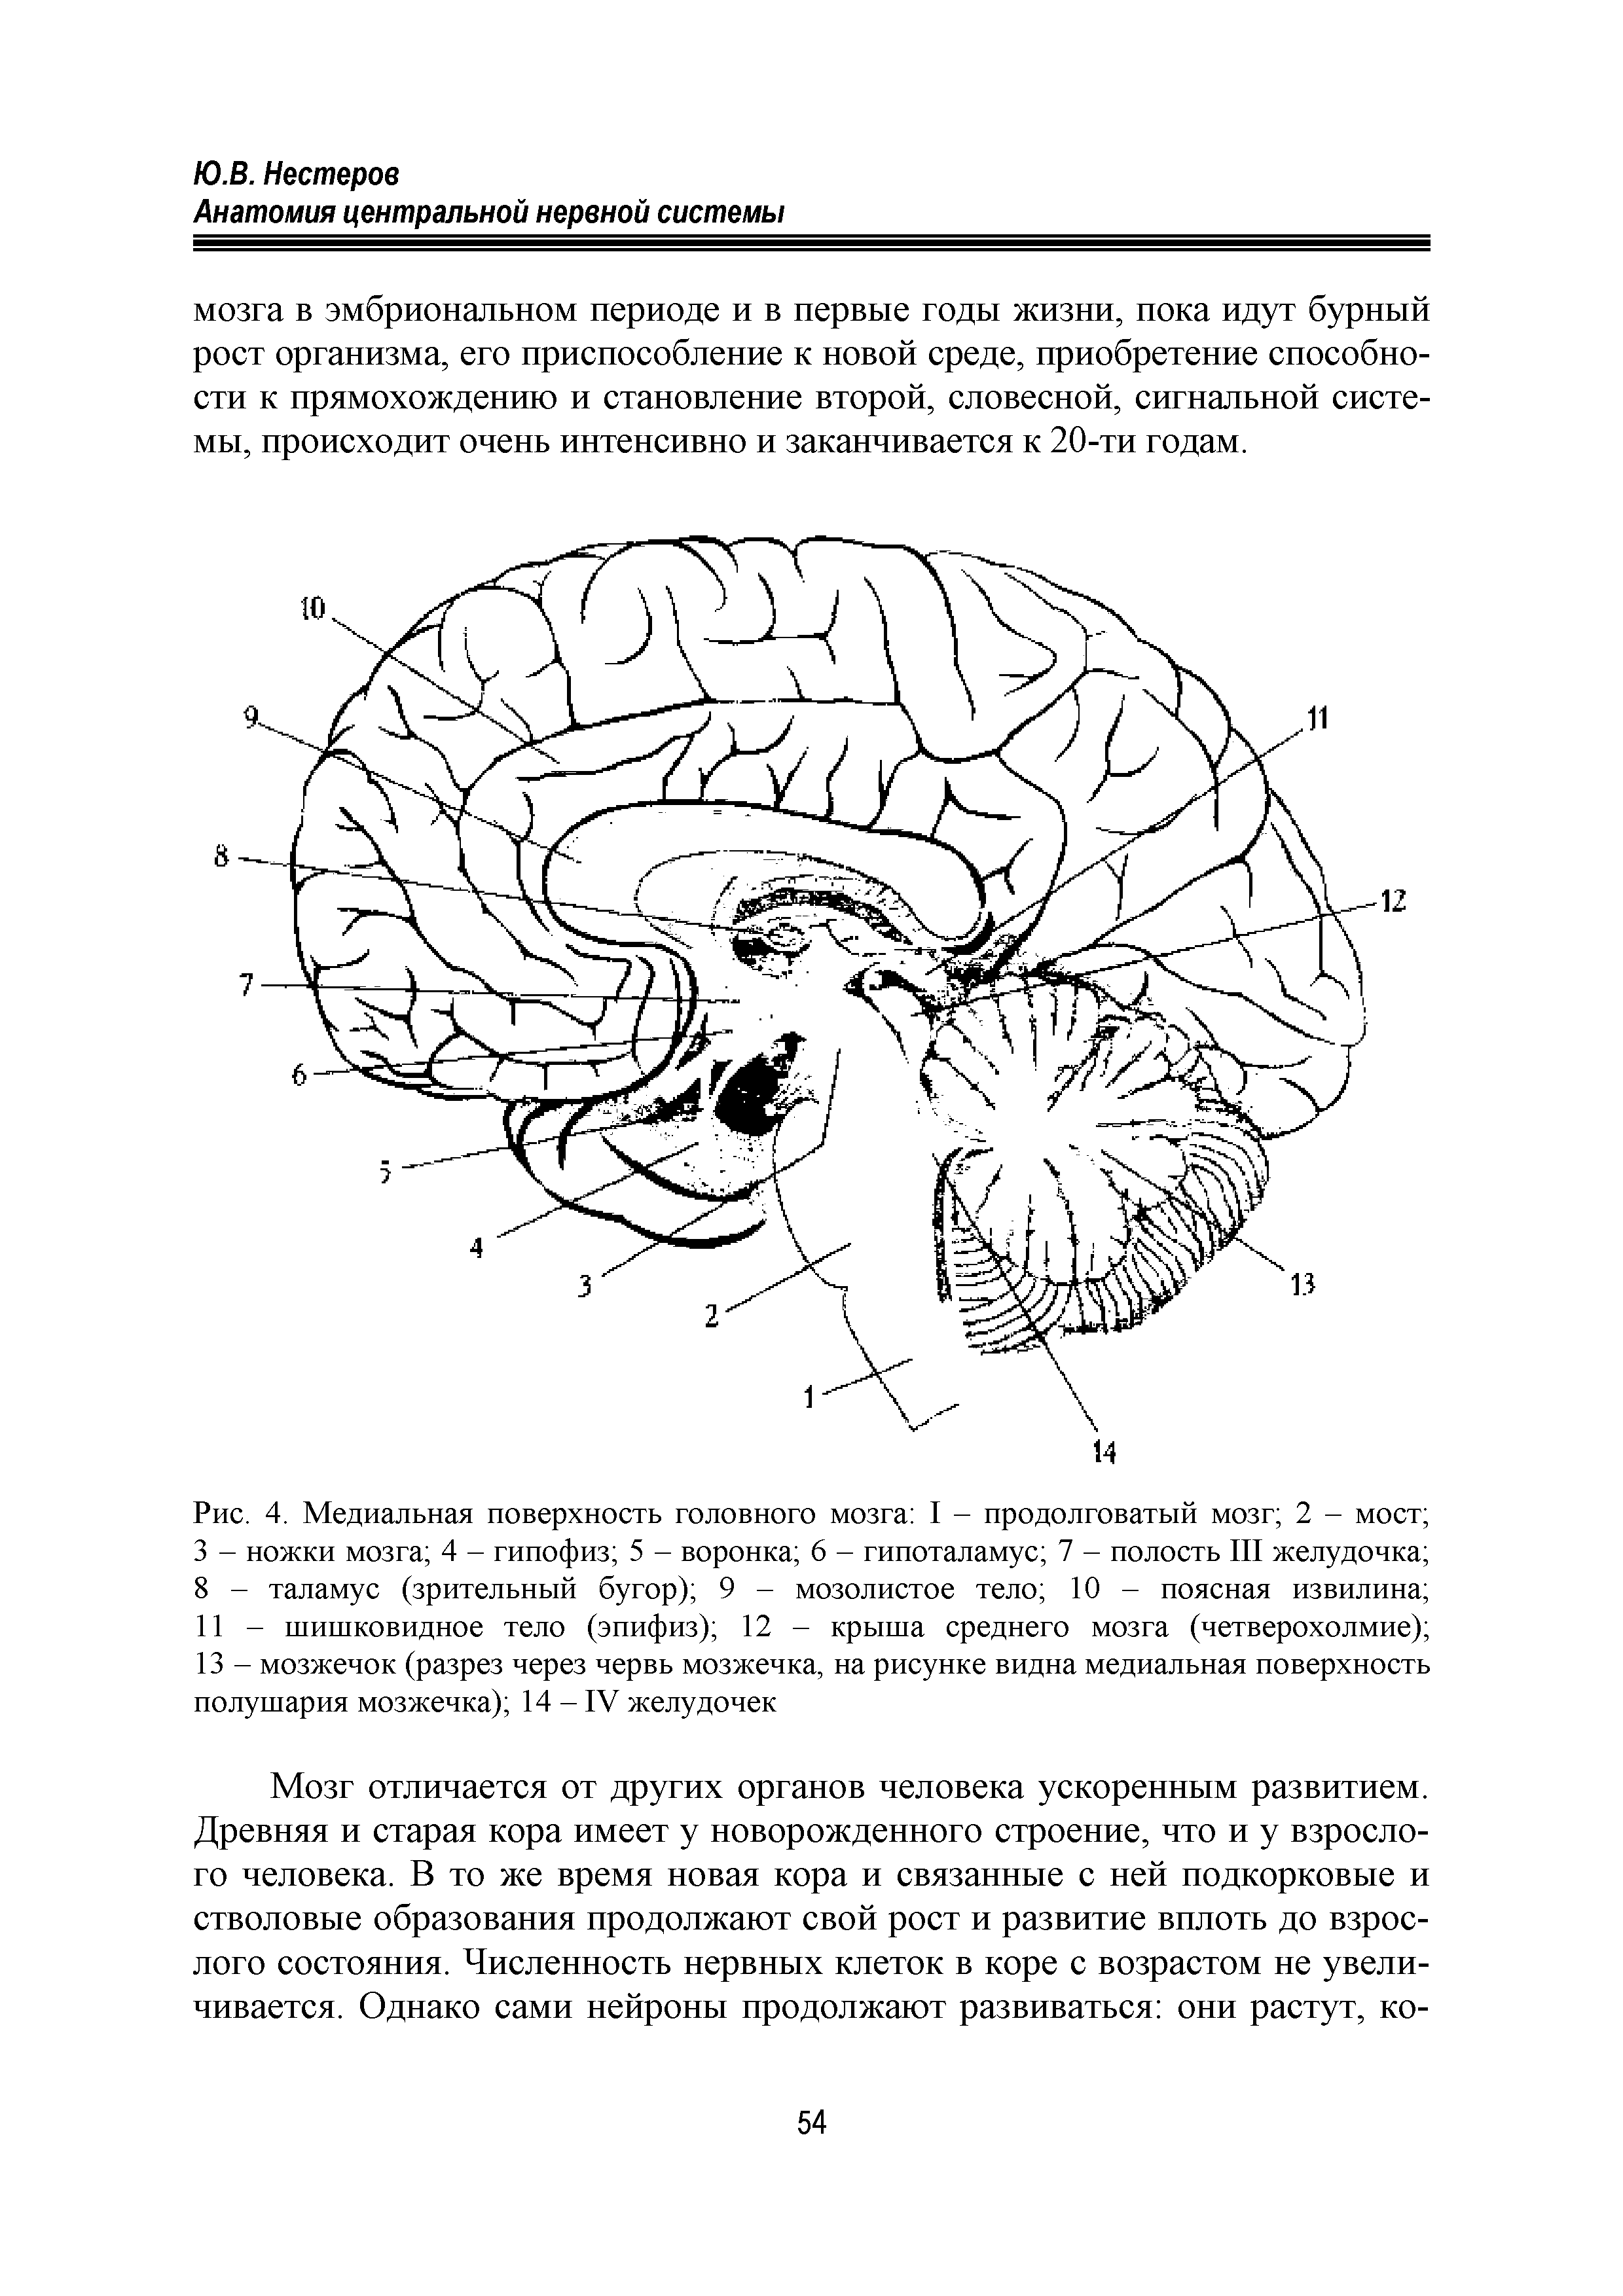 Рис. 4. Медиальная поверхность головного мозга I - продолговатый мозг 2 - мост 3 - ножки мозга 4 - гипофиз 5 - воронка 6 - гипоталамус 7 - полость III желудочка 8 - таламус (зрительный бугор) 9 - мозолистое тело 10 - поясная извилина 11 - шишковидное тело (эпифиз) 12 - крыша среднего мозга (четверохолмие) 13 - мозжечок (разрез через червь мозжечка, на рисунке видна медиальная поверхность полушария мозжечка) 14 - IV желудочек...